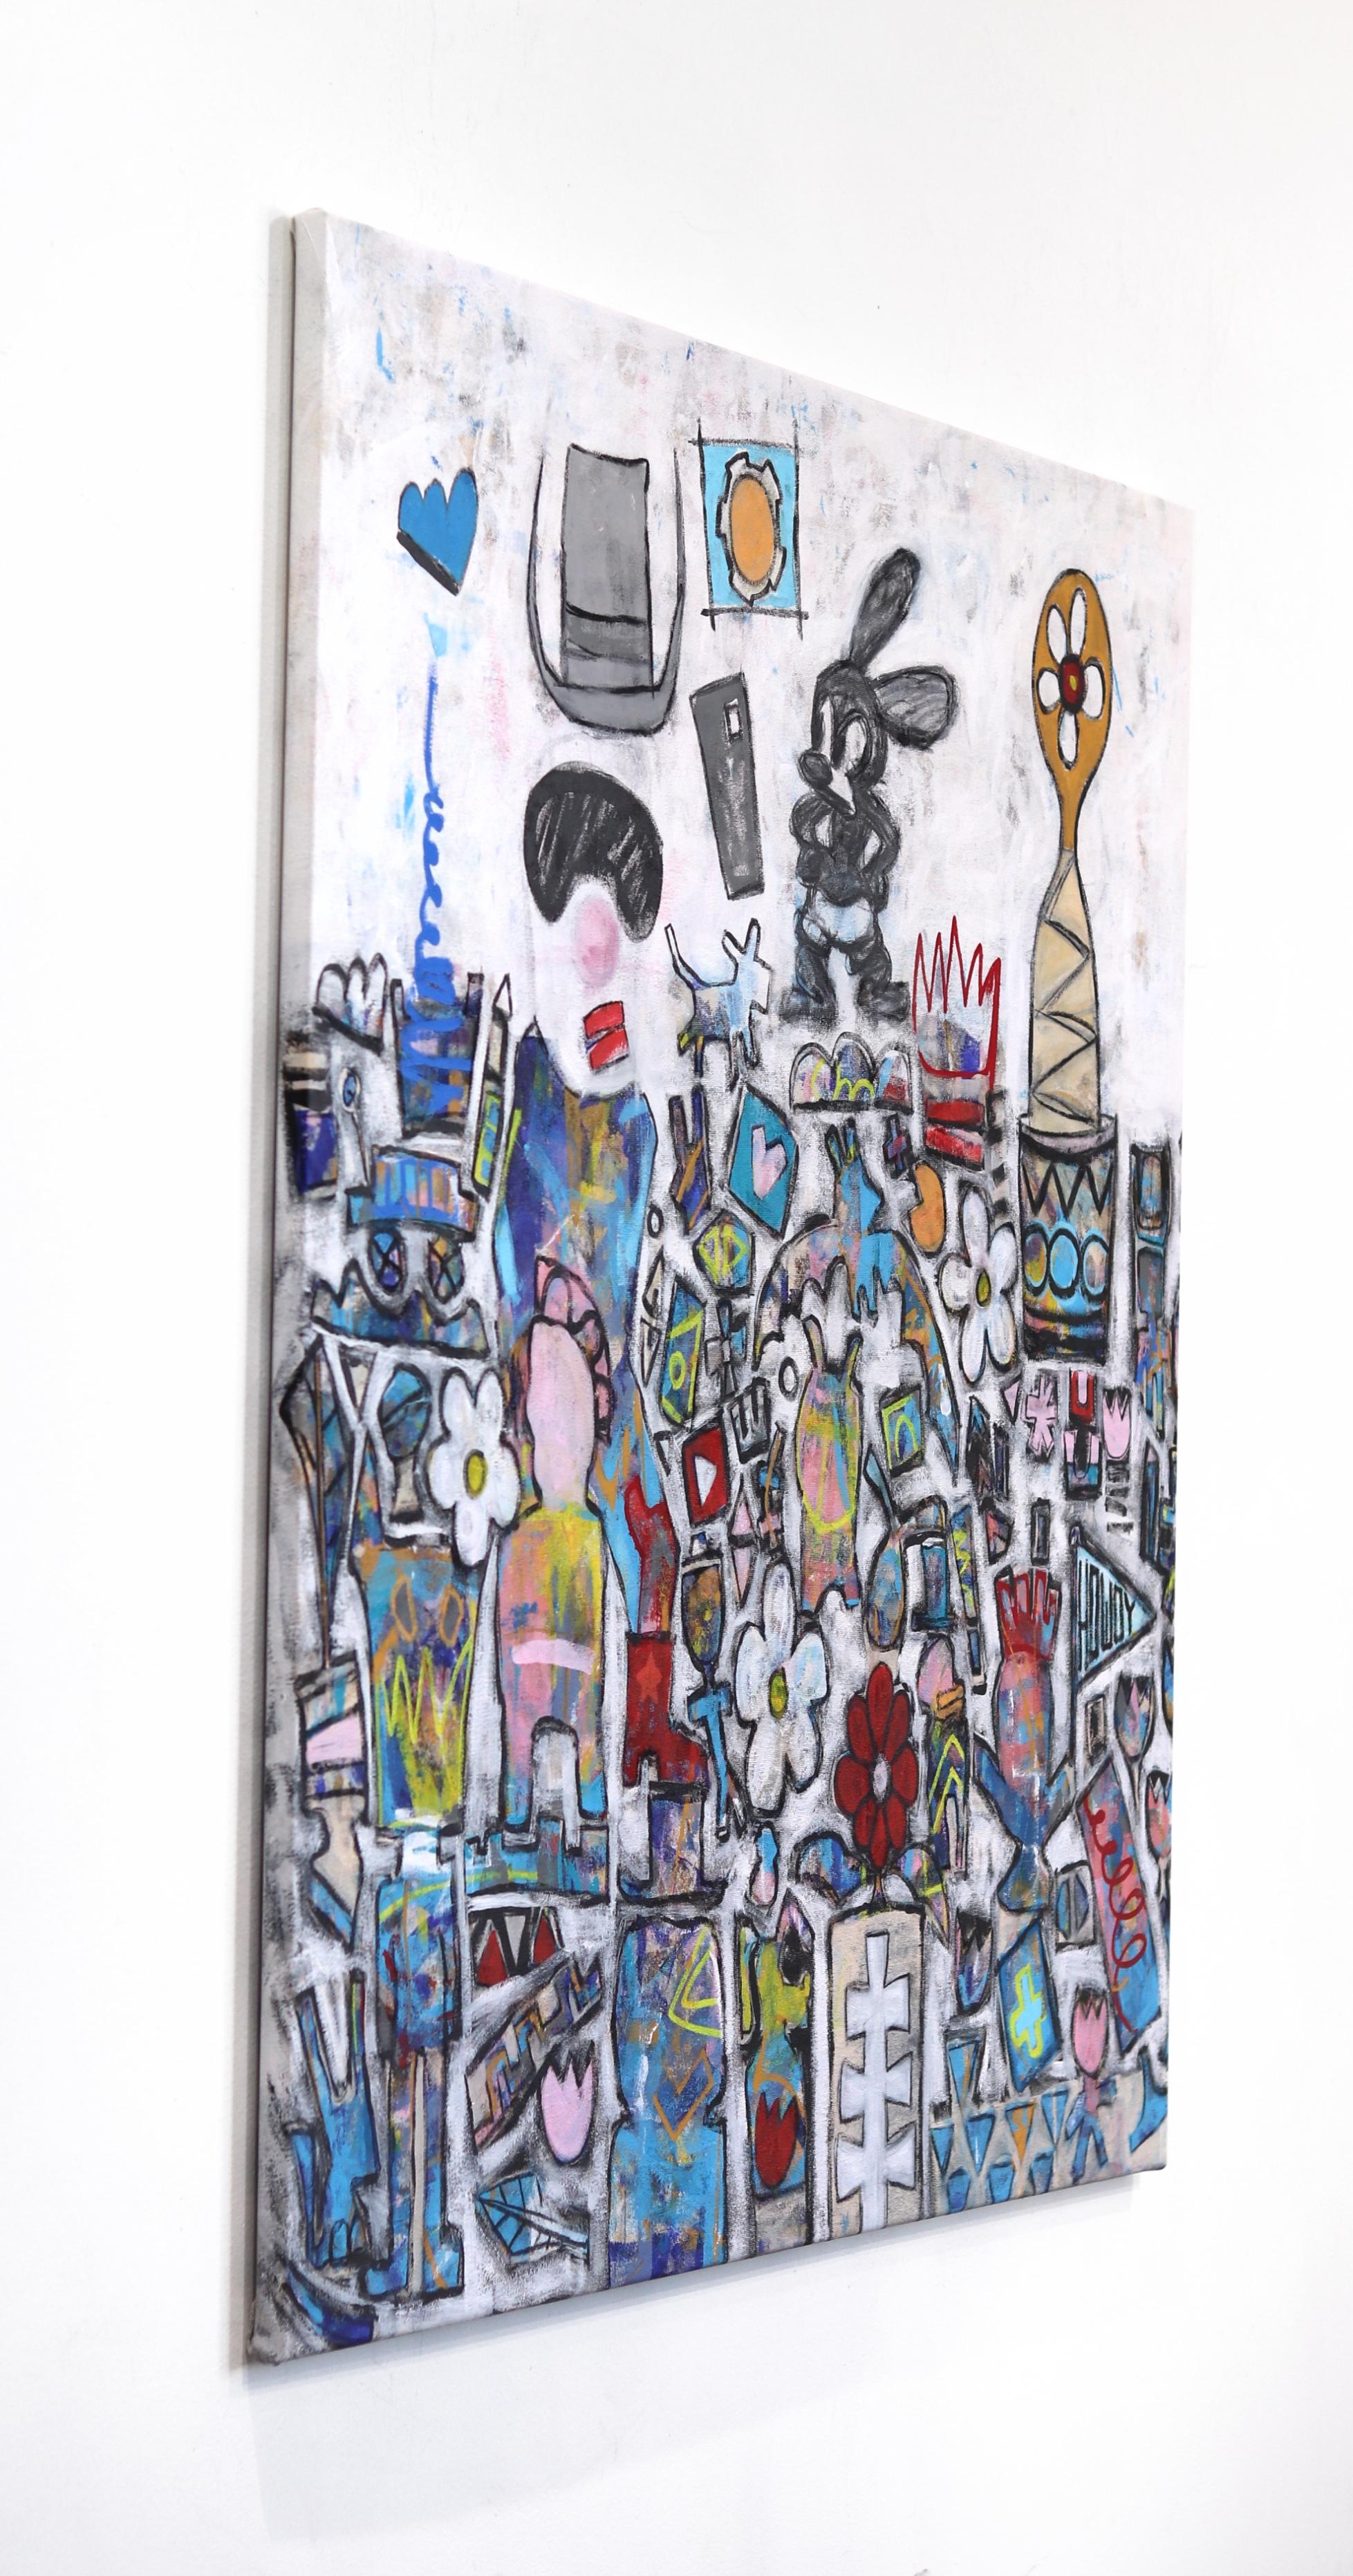 Oswald der Kaninchen! Großes farbenfrohes, inspirierendes, neoexpressionistisches Pop-Art-Gemälde  (Grau), Abstract Painting, von Tommy Lennartsson